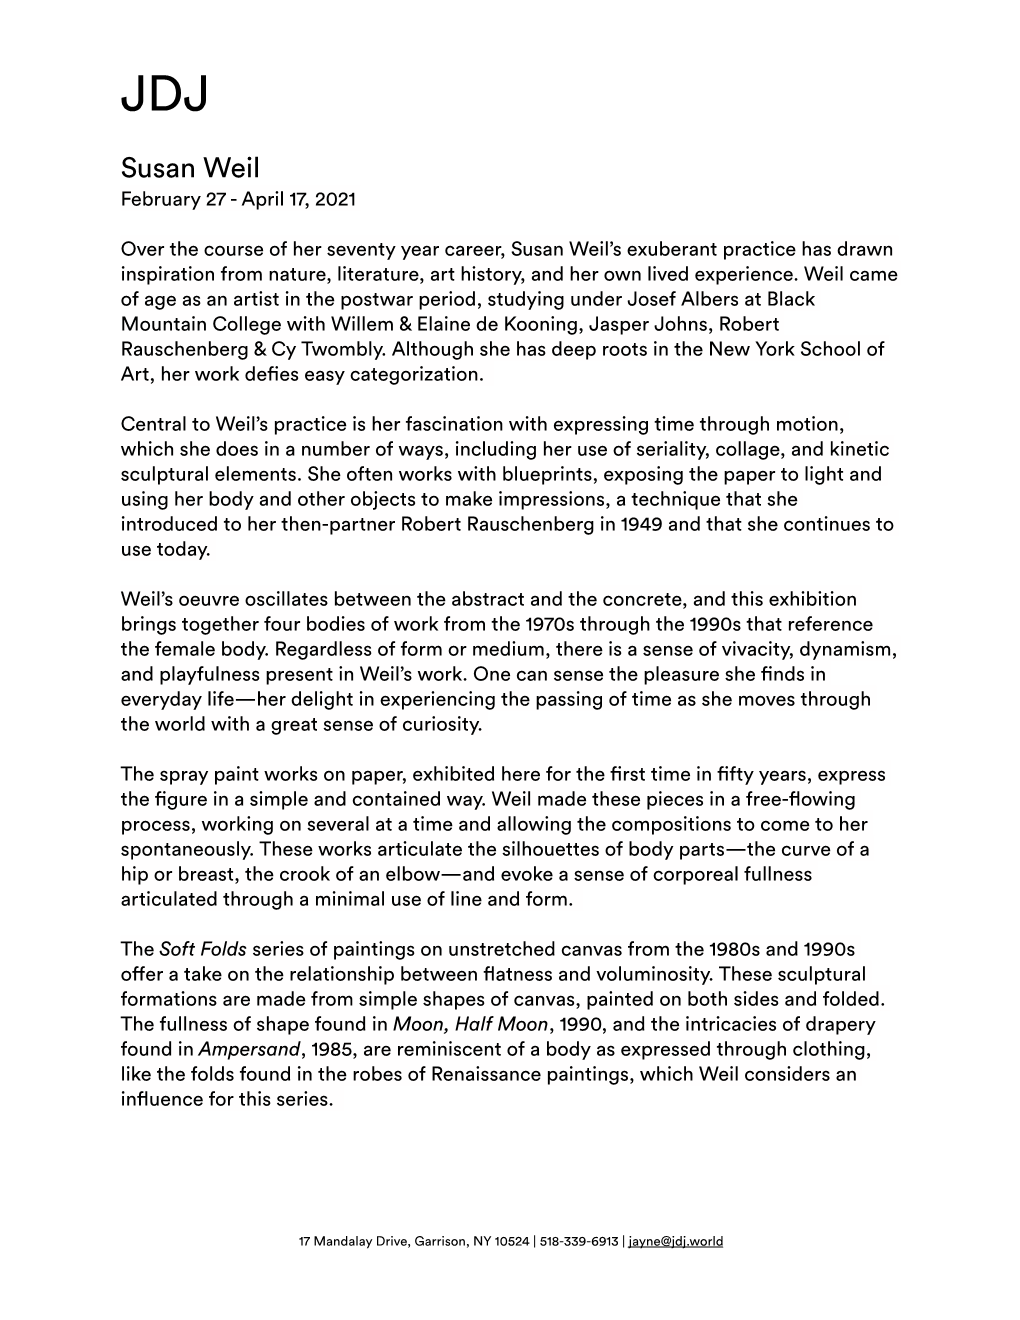 Susan Weil Press Release